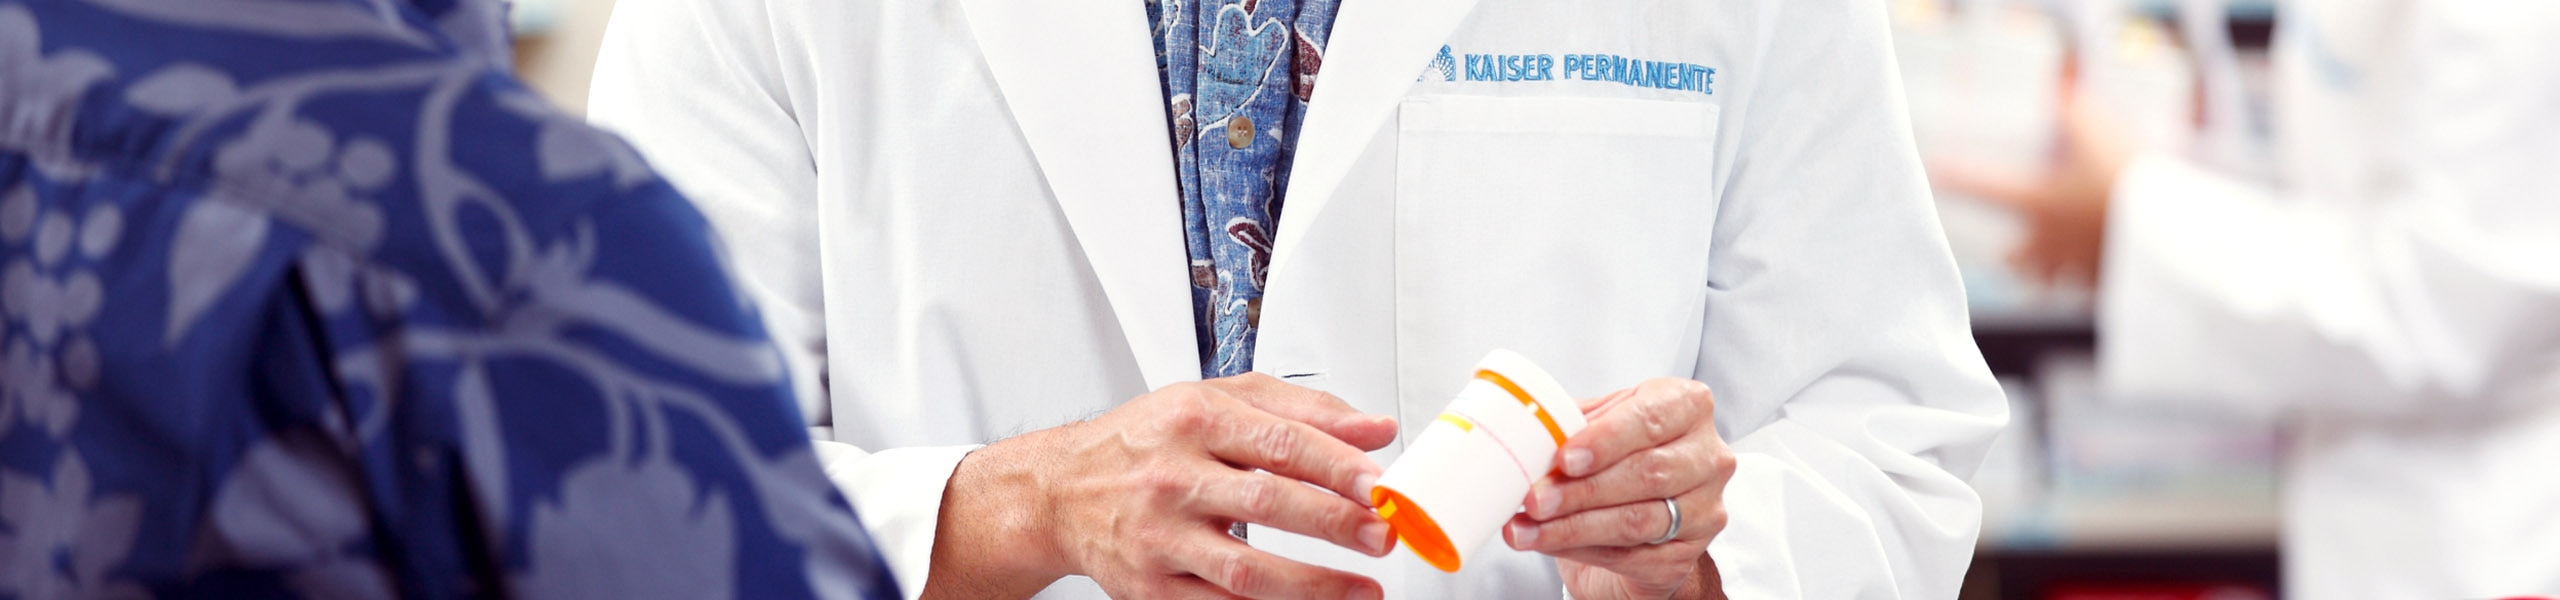 Pharmacist holding a prescription bottle